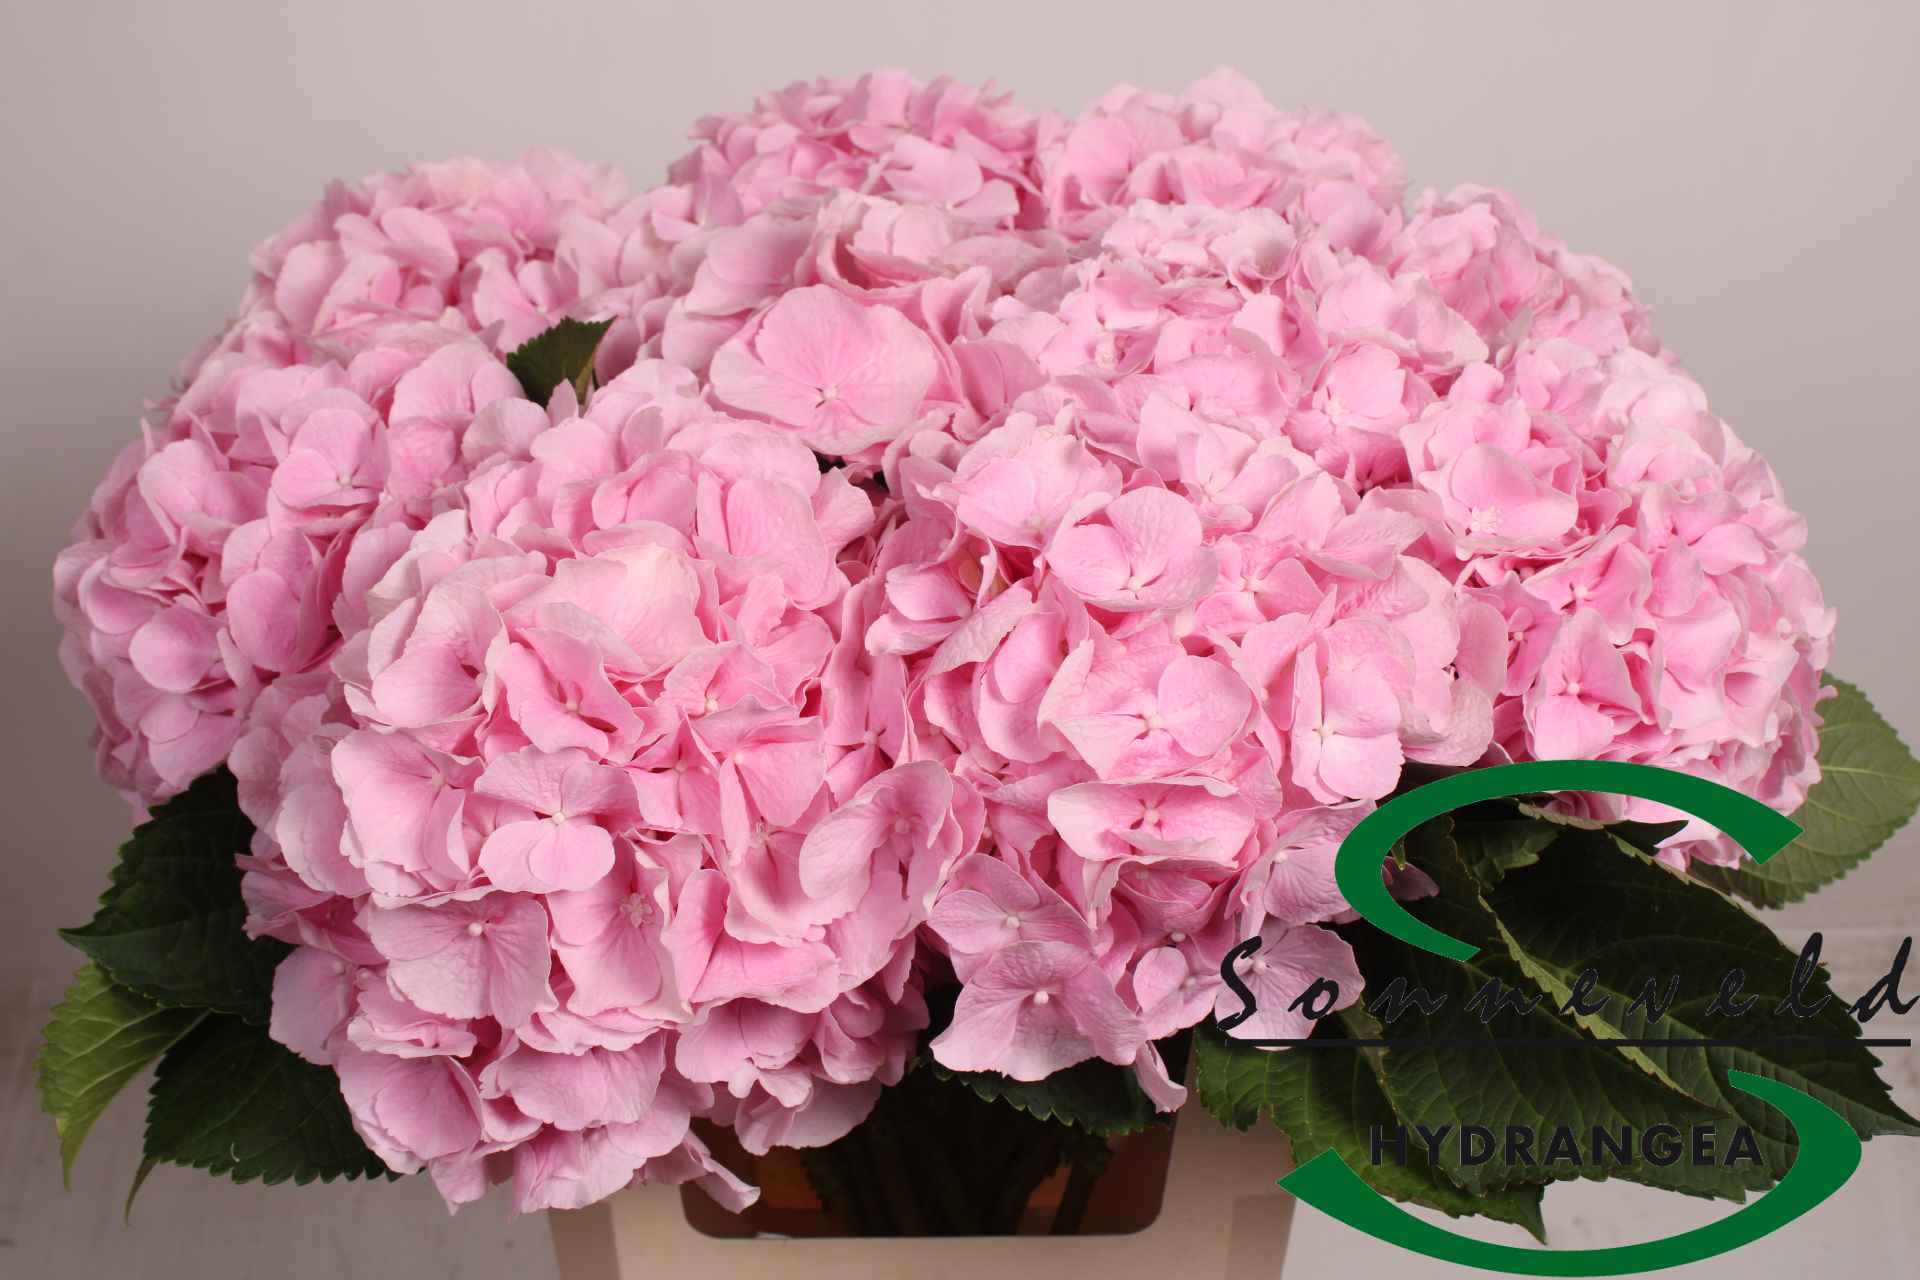 Срезанные цветы оптом Hydrangea verena jumbo от 10шт из Голландии с доставкой по России